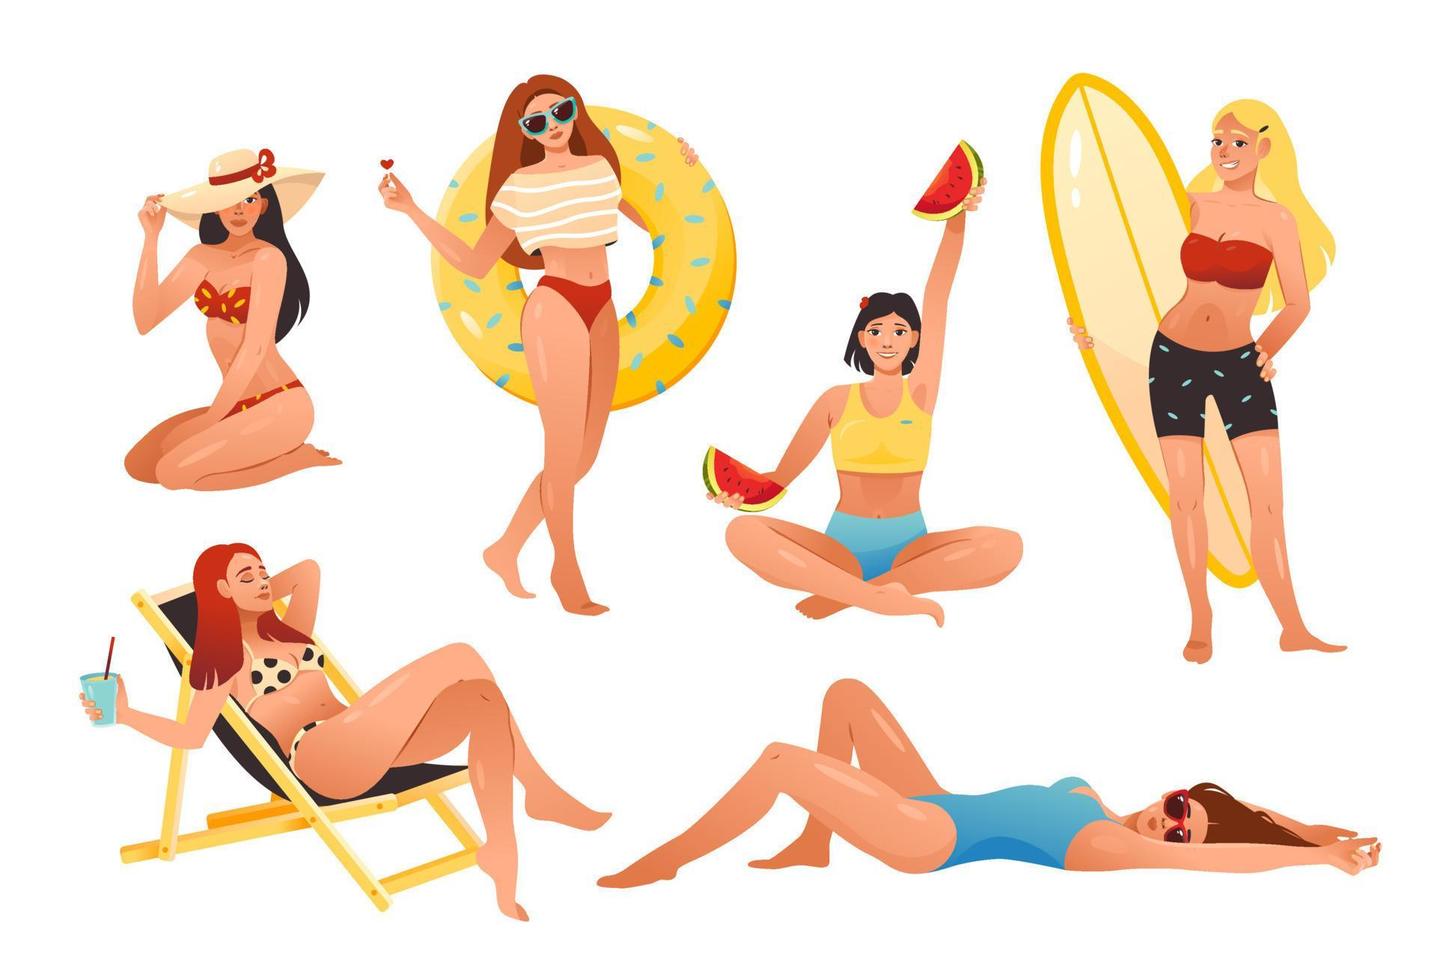 jonge meisjes zijn bezig met zomervakanties op het strand - zonnebaden, wandelen met surfplanken, zwemmen met een opblaasbare cirkel, fruit eten. stripfiguren geïsoleerd op een witte achtergrond vector